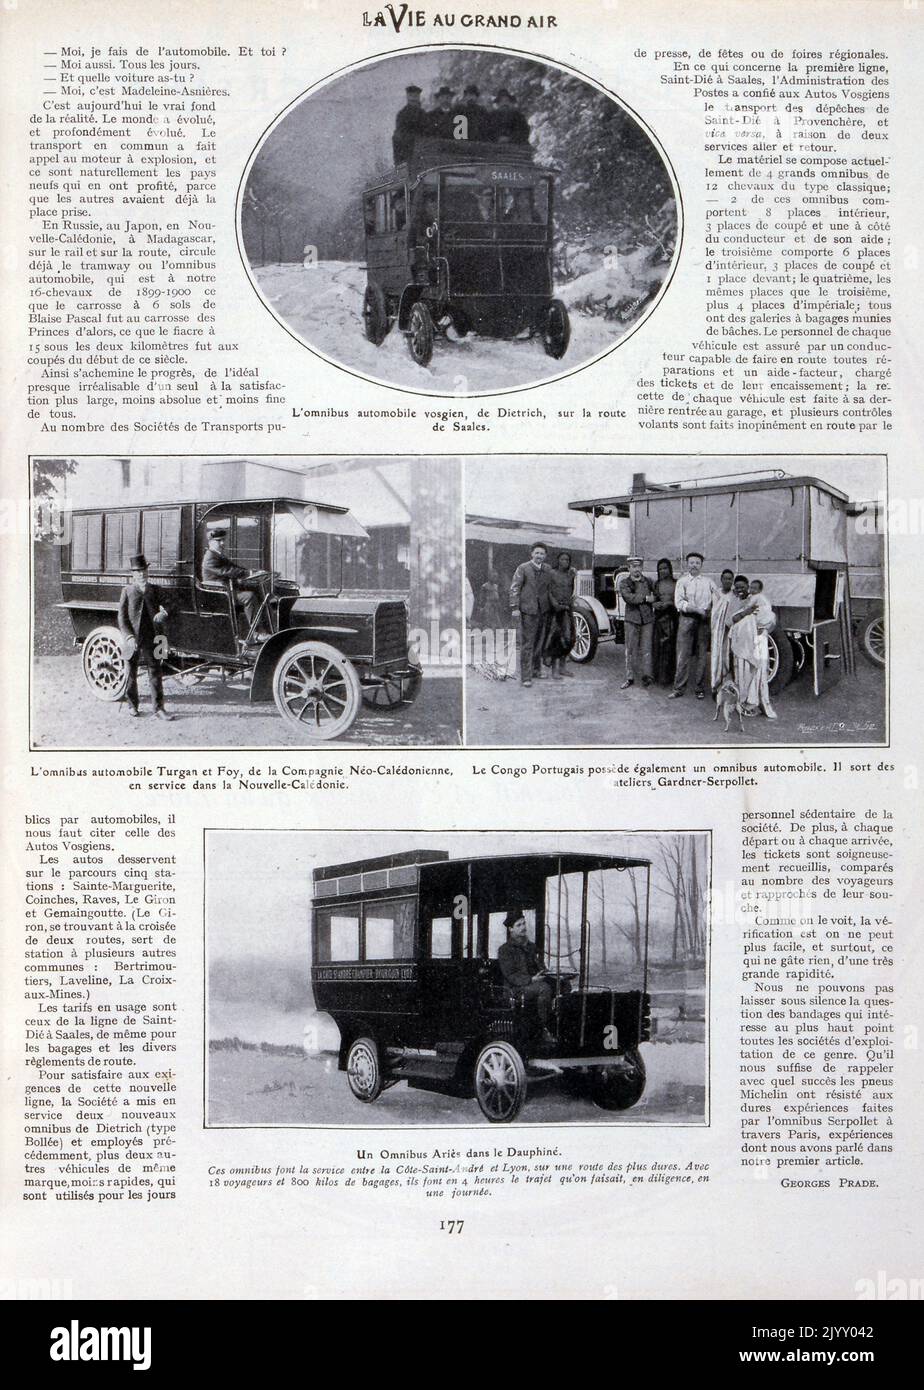 Des photographies de bus français à essence ont été présentées pour les transports publics en 1905 Banque D'Images